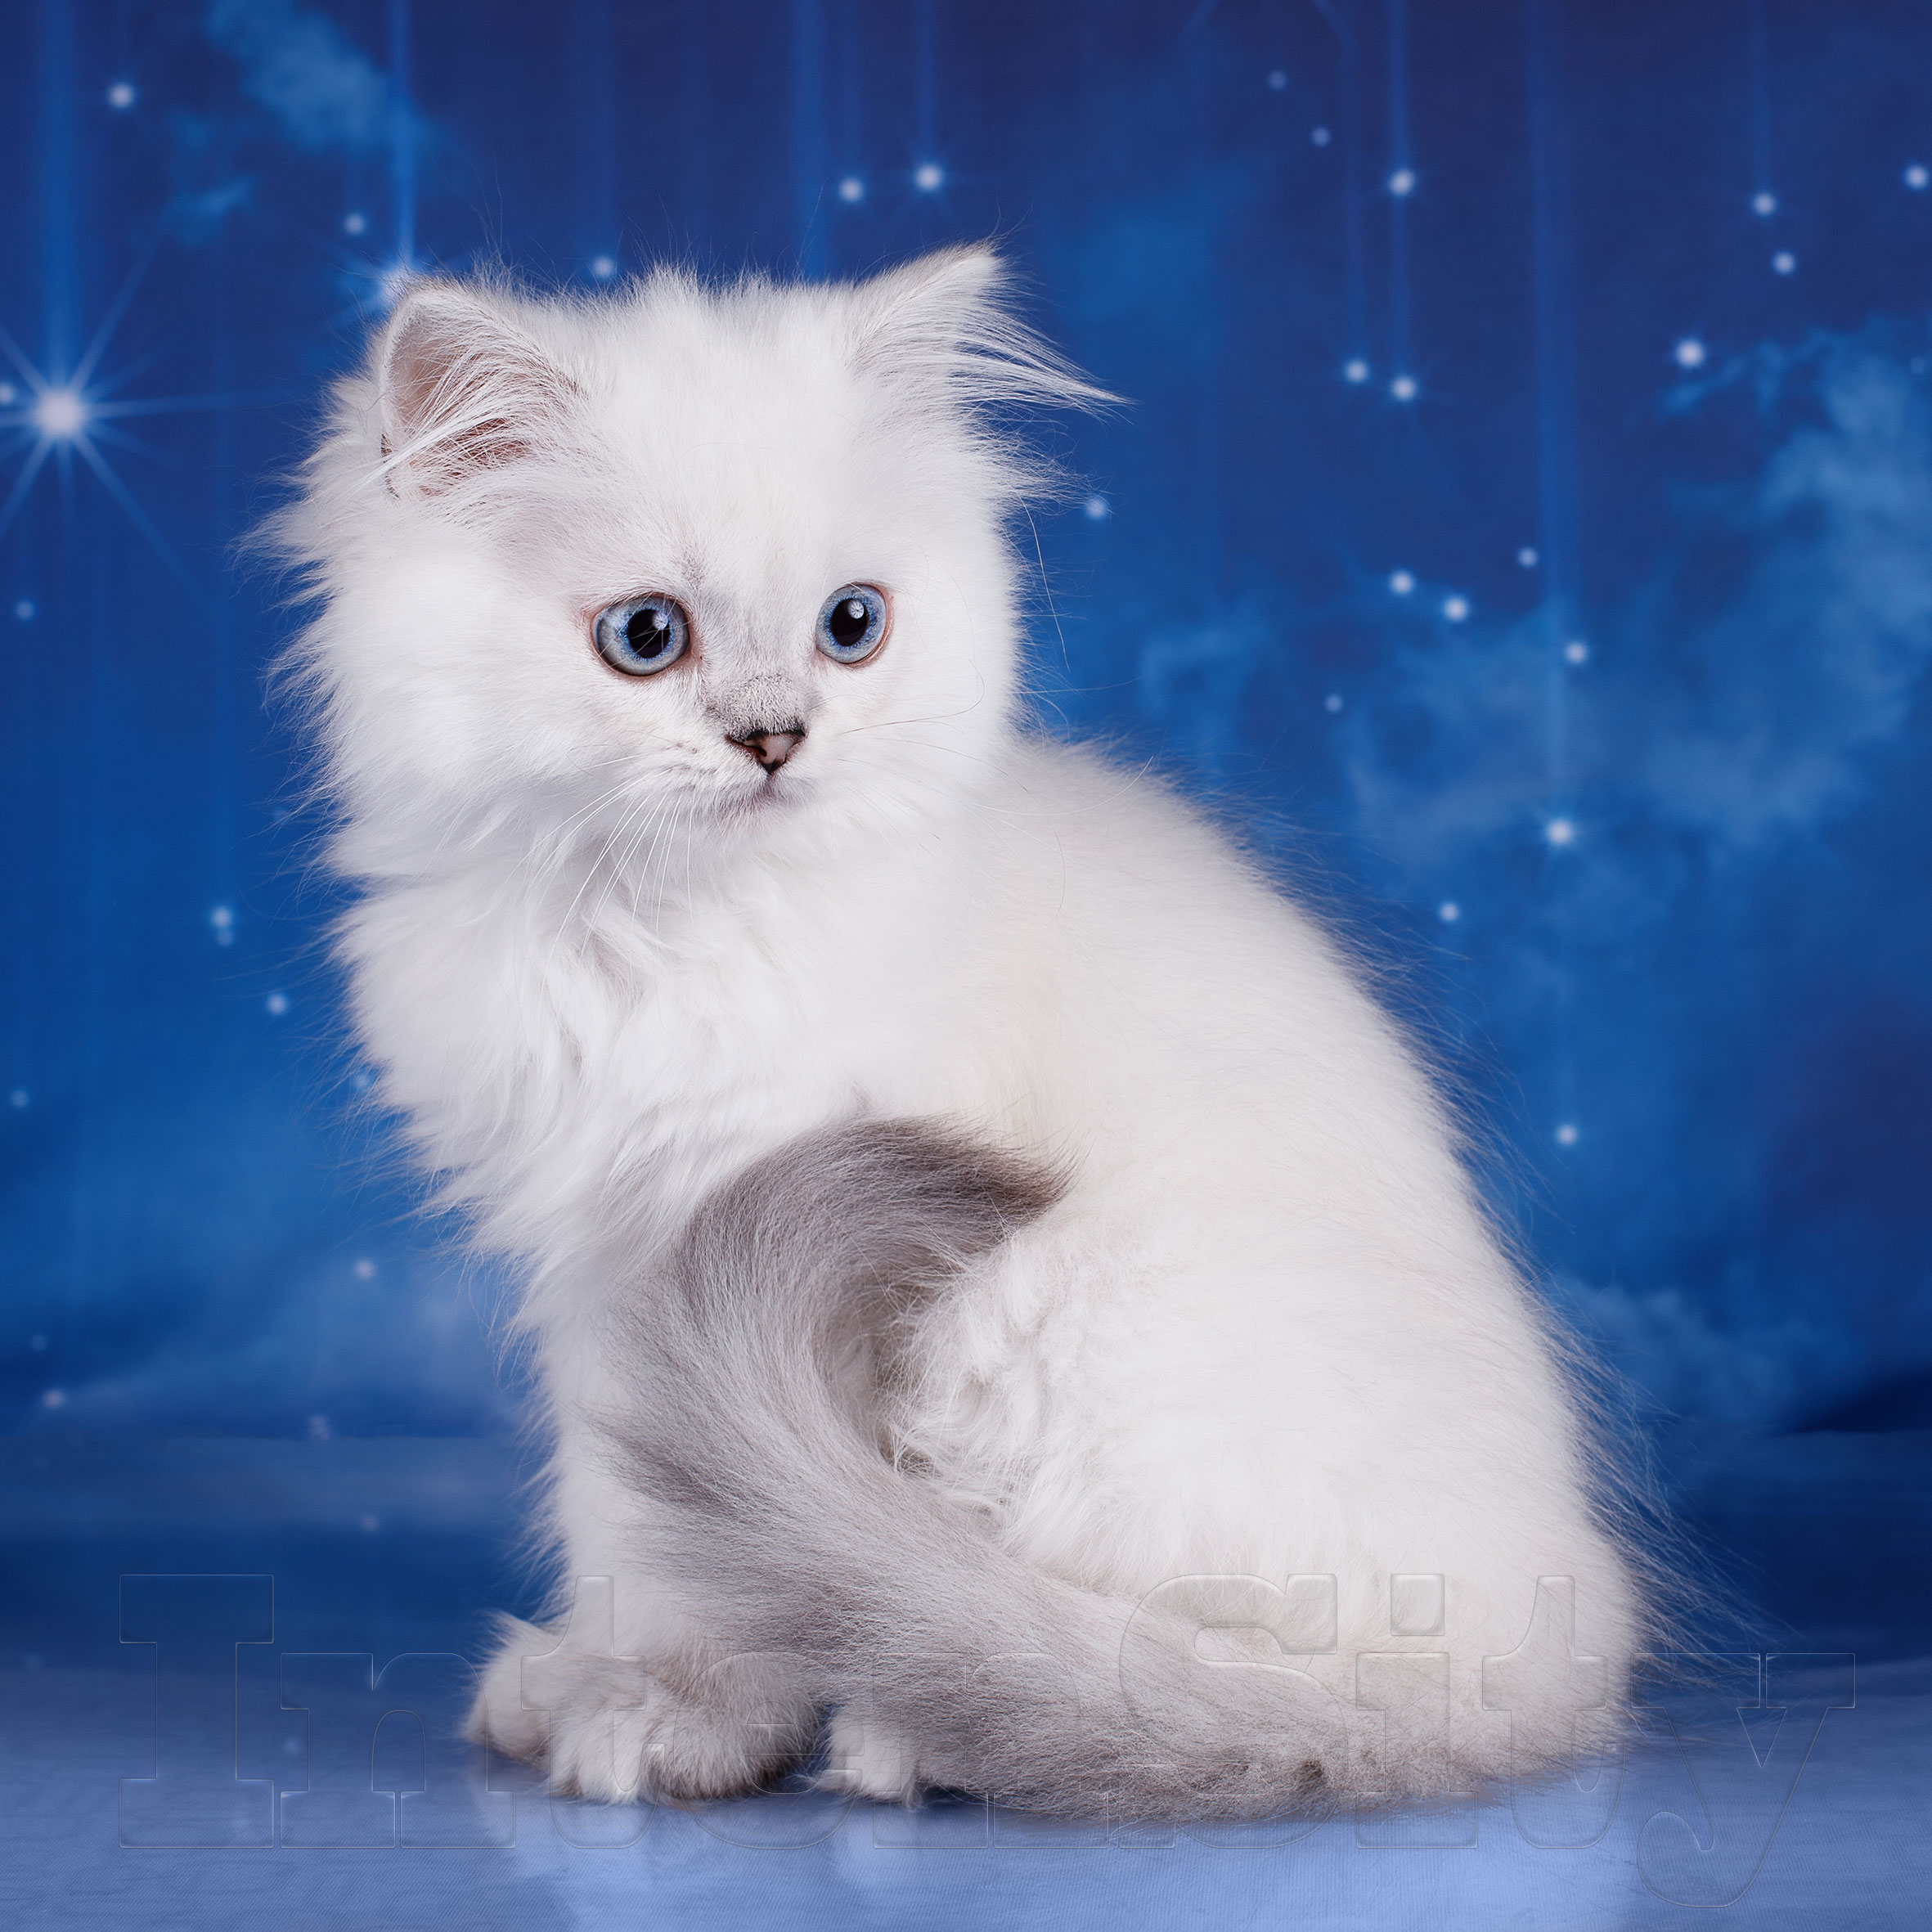 Кошки купить спб недорого. Скоттиш страйт белый кот длинношерстный. Шотландский хайленд страйт белый. Шотландская кошка прямоухая белая длинношерстная. Хайленд страйт белая кошка.